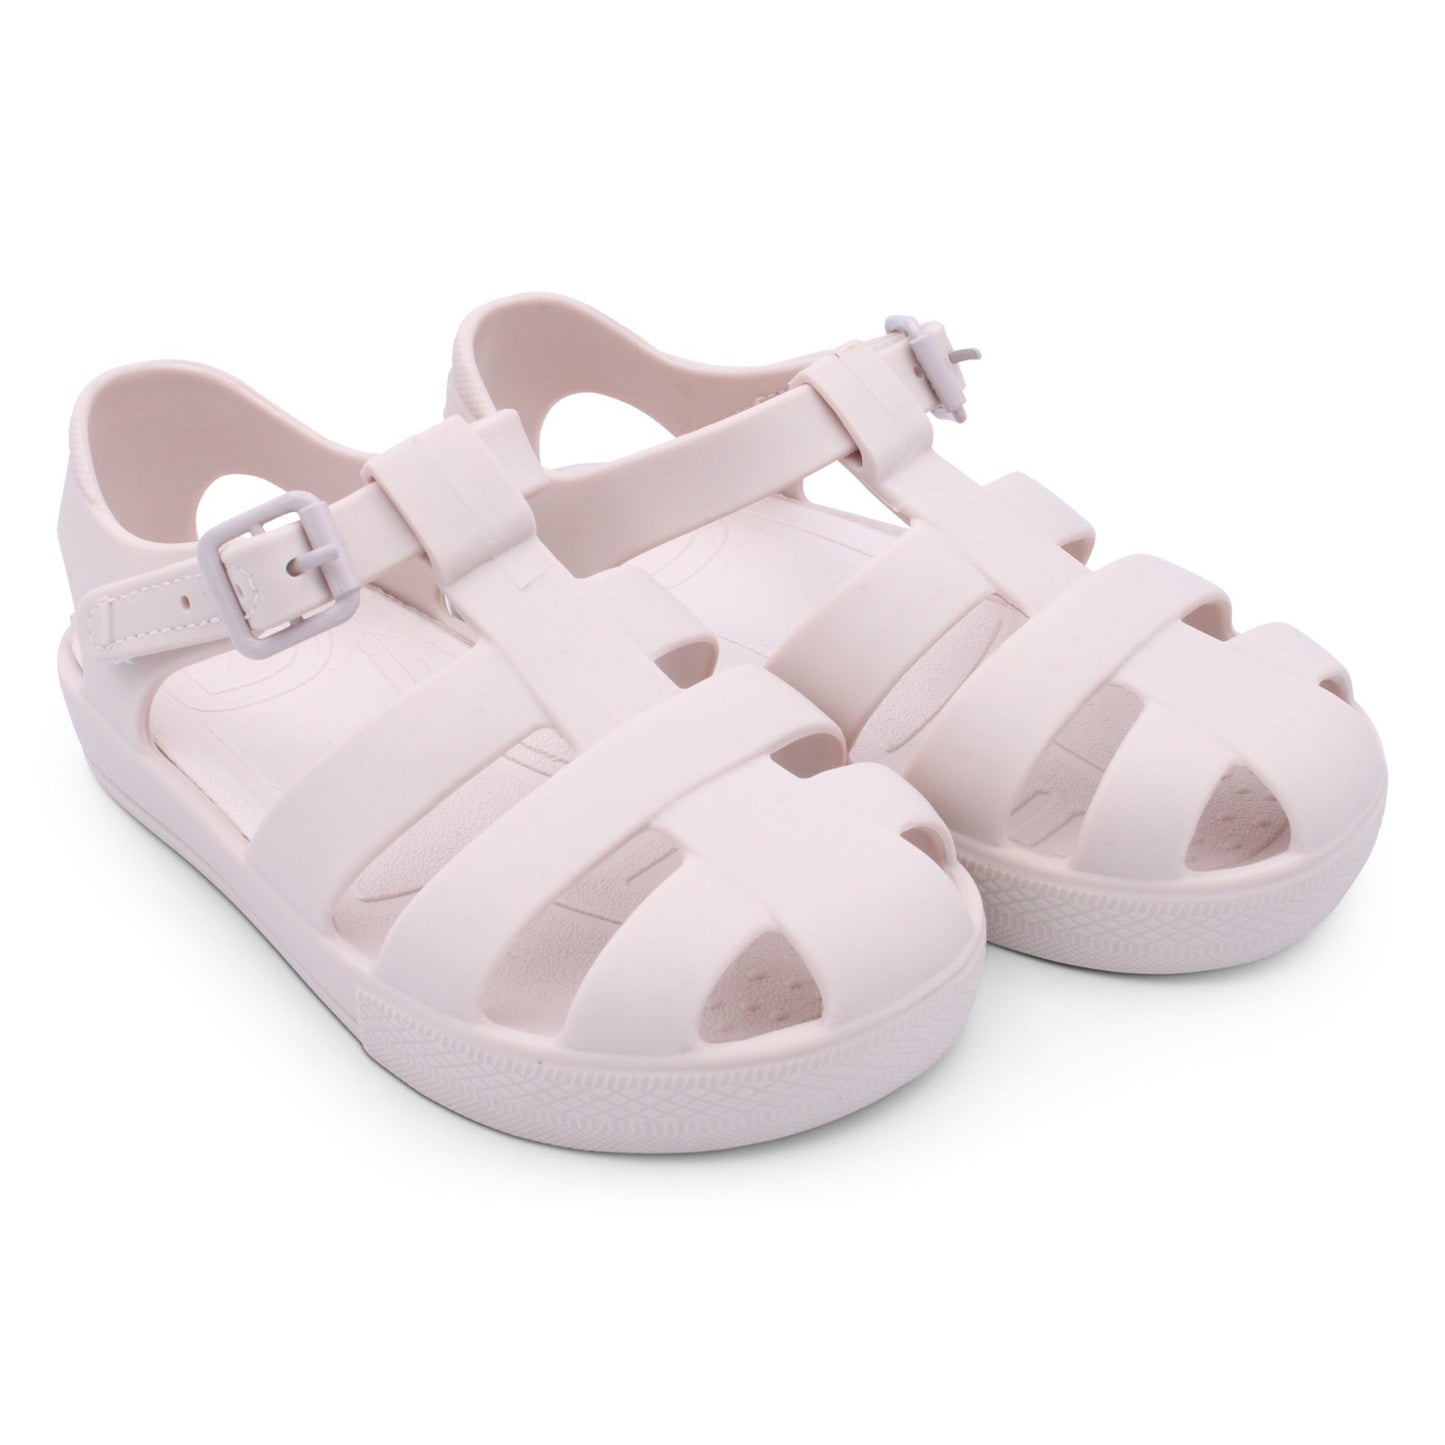 Children’s beige jelly sandals by Marena - Adora Childrenswear 